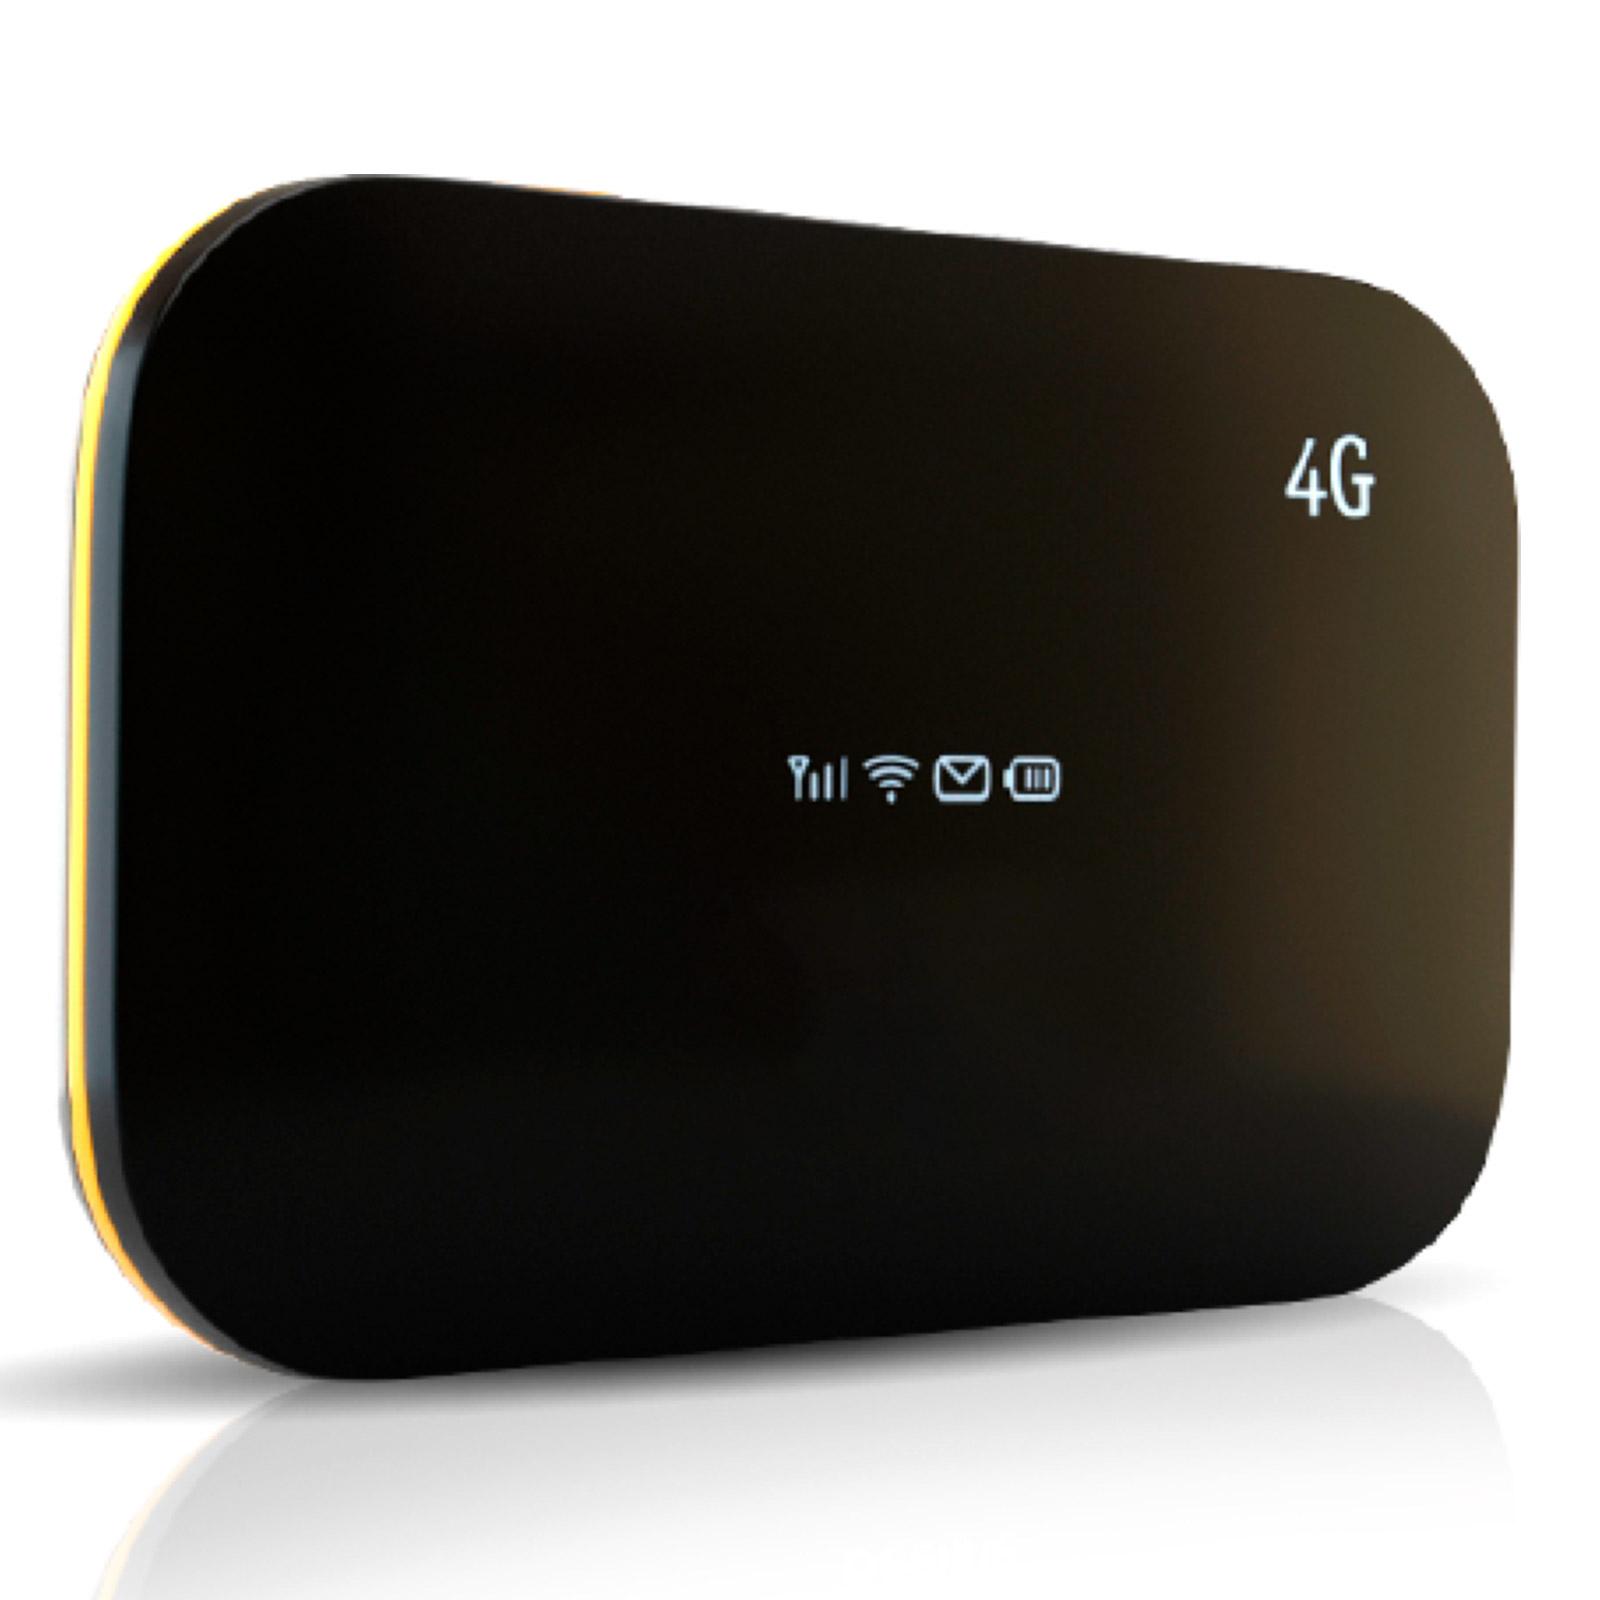 Портативный, автономный 4G, 3G модем, WiFi роутер, маршрутизатор Shanghai Boost Even L02H, L02Hi, цвет черный